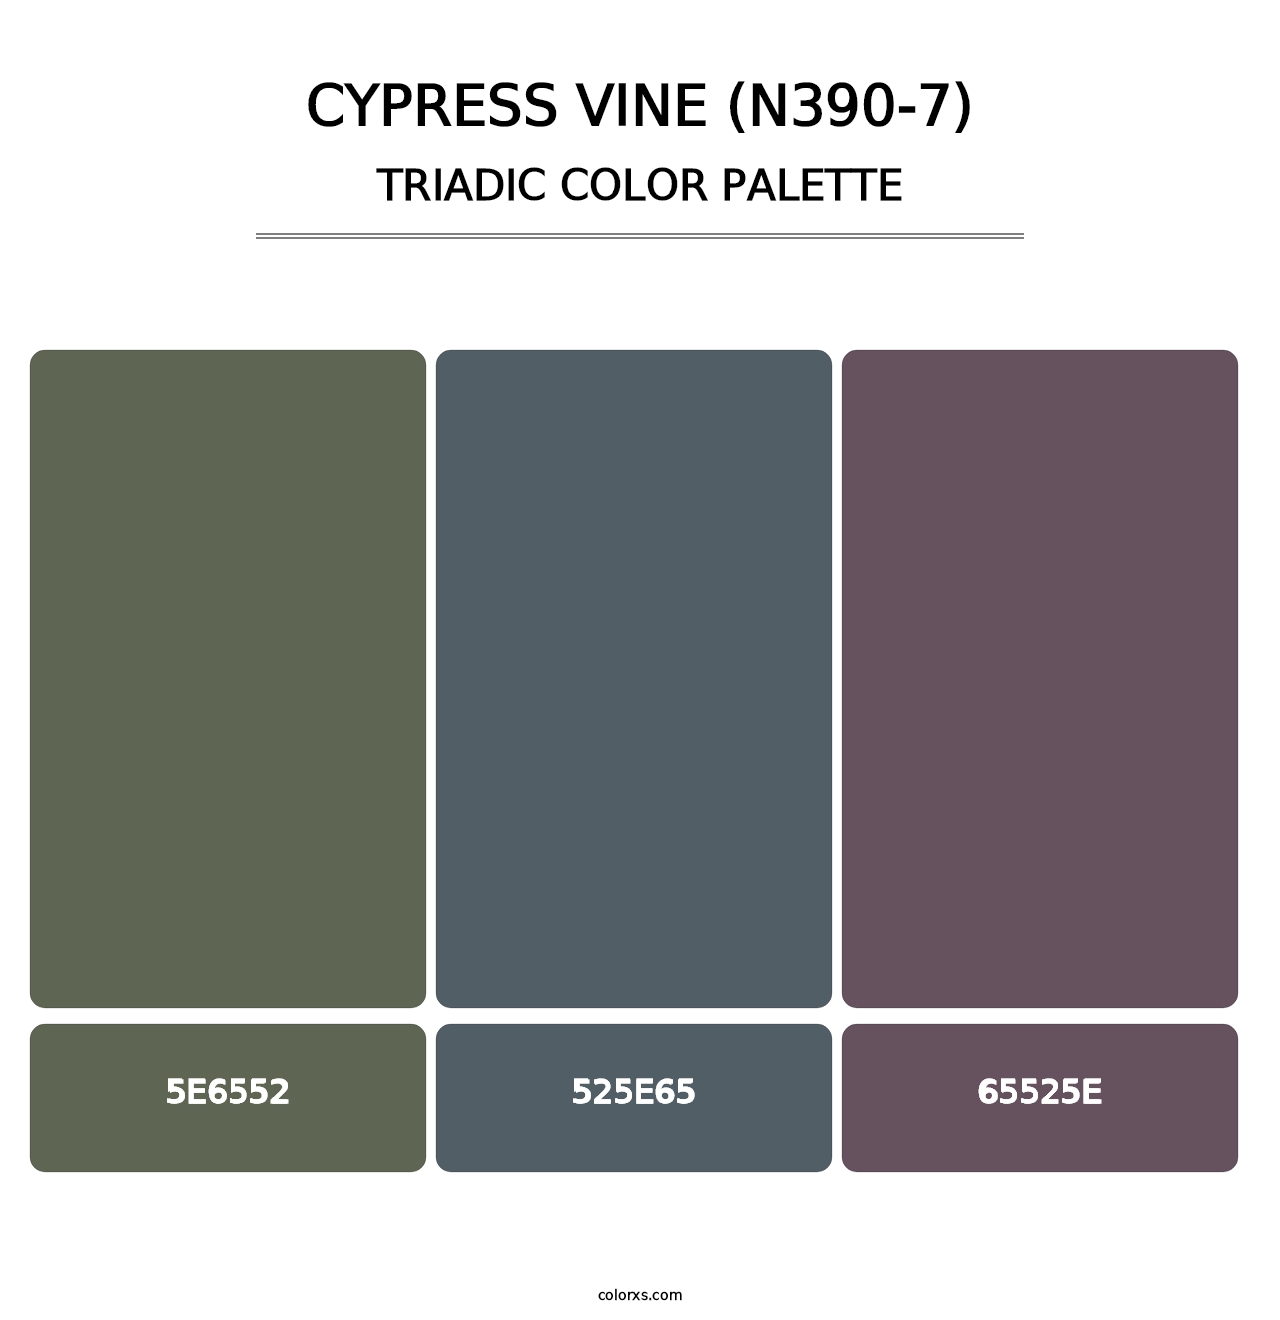 Cypress Vine (N390-7) - Triadic Color Palette